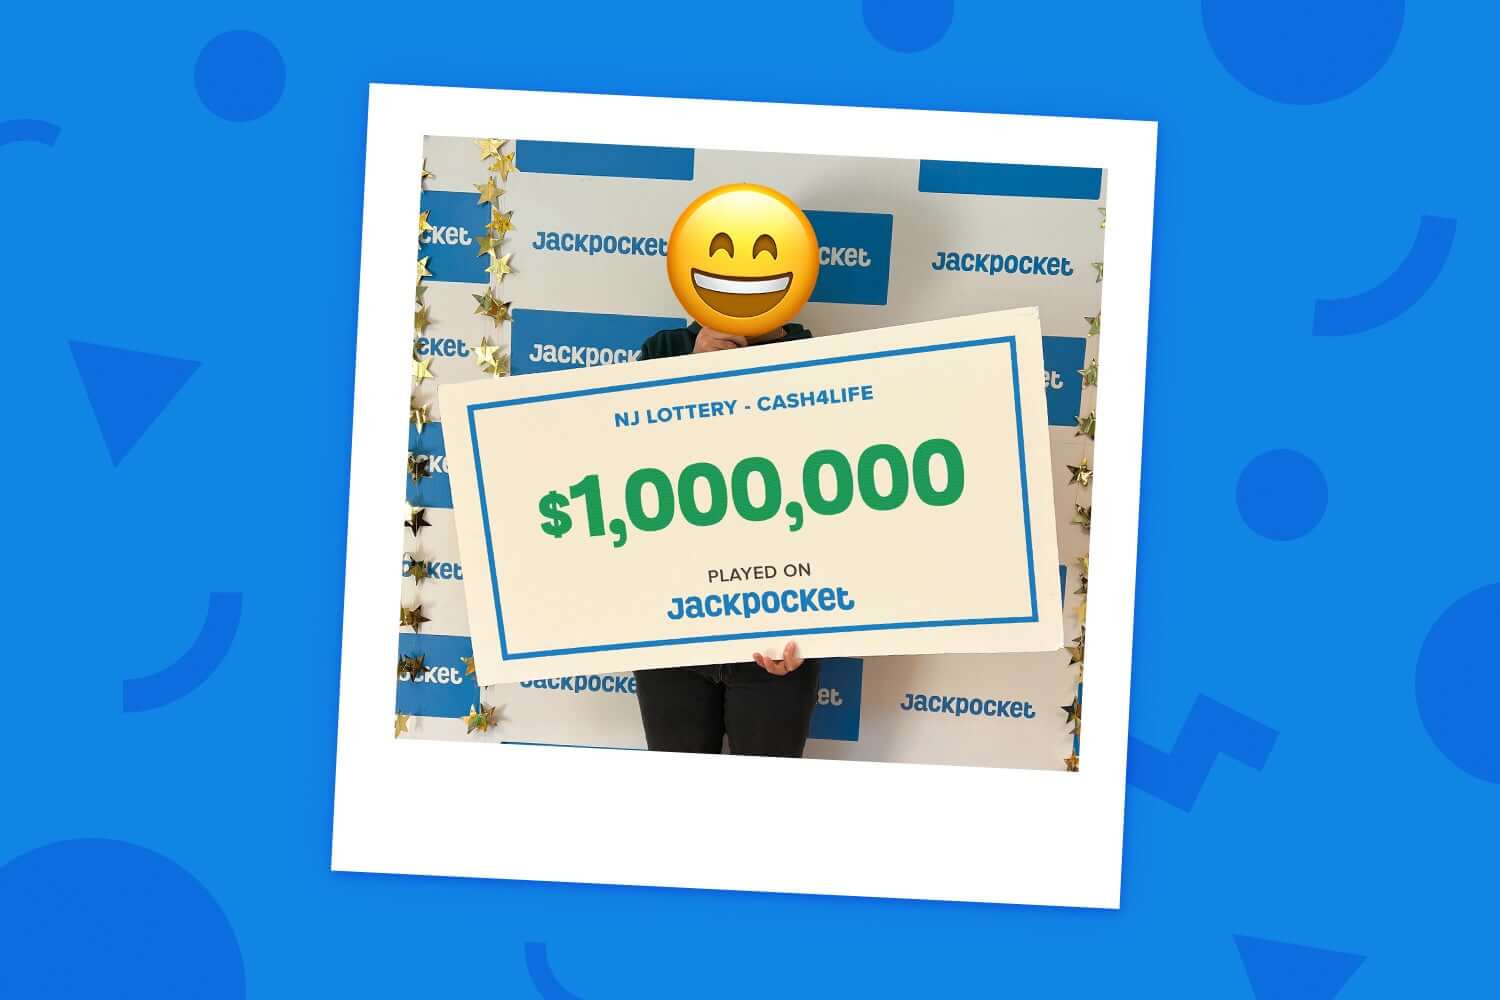 NJ Jackpocket Player Wins $1,000,000 on Cash4Life